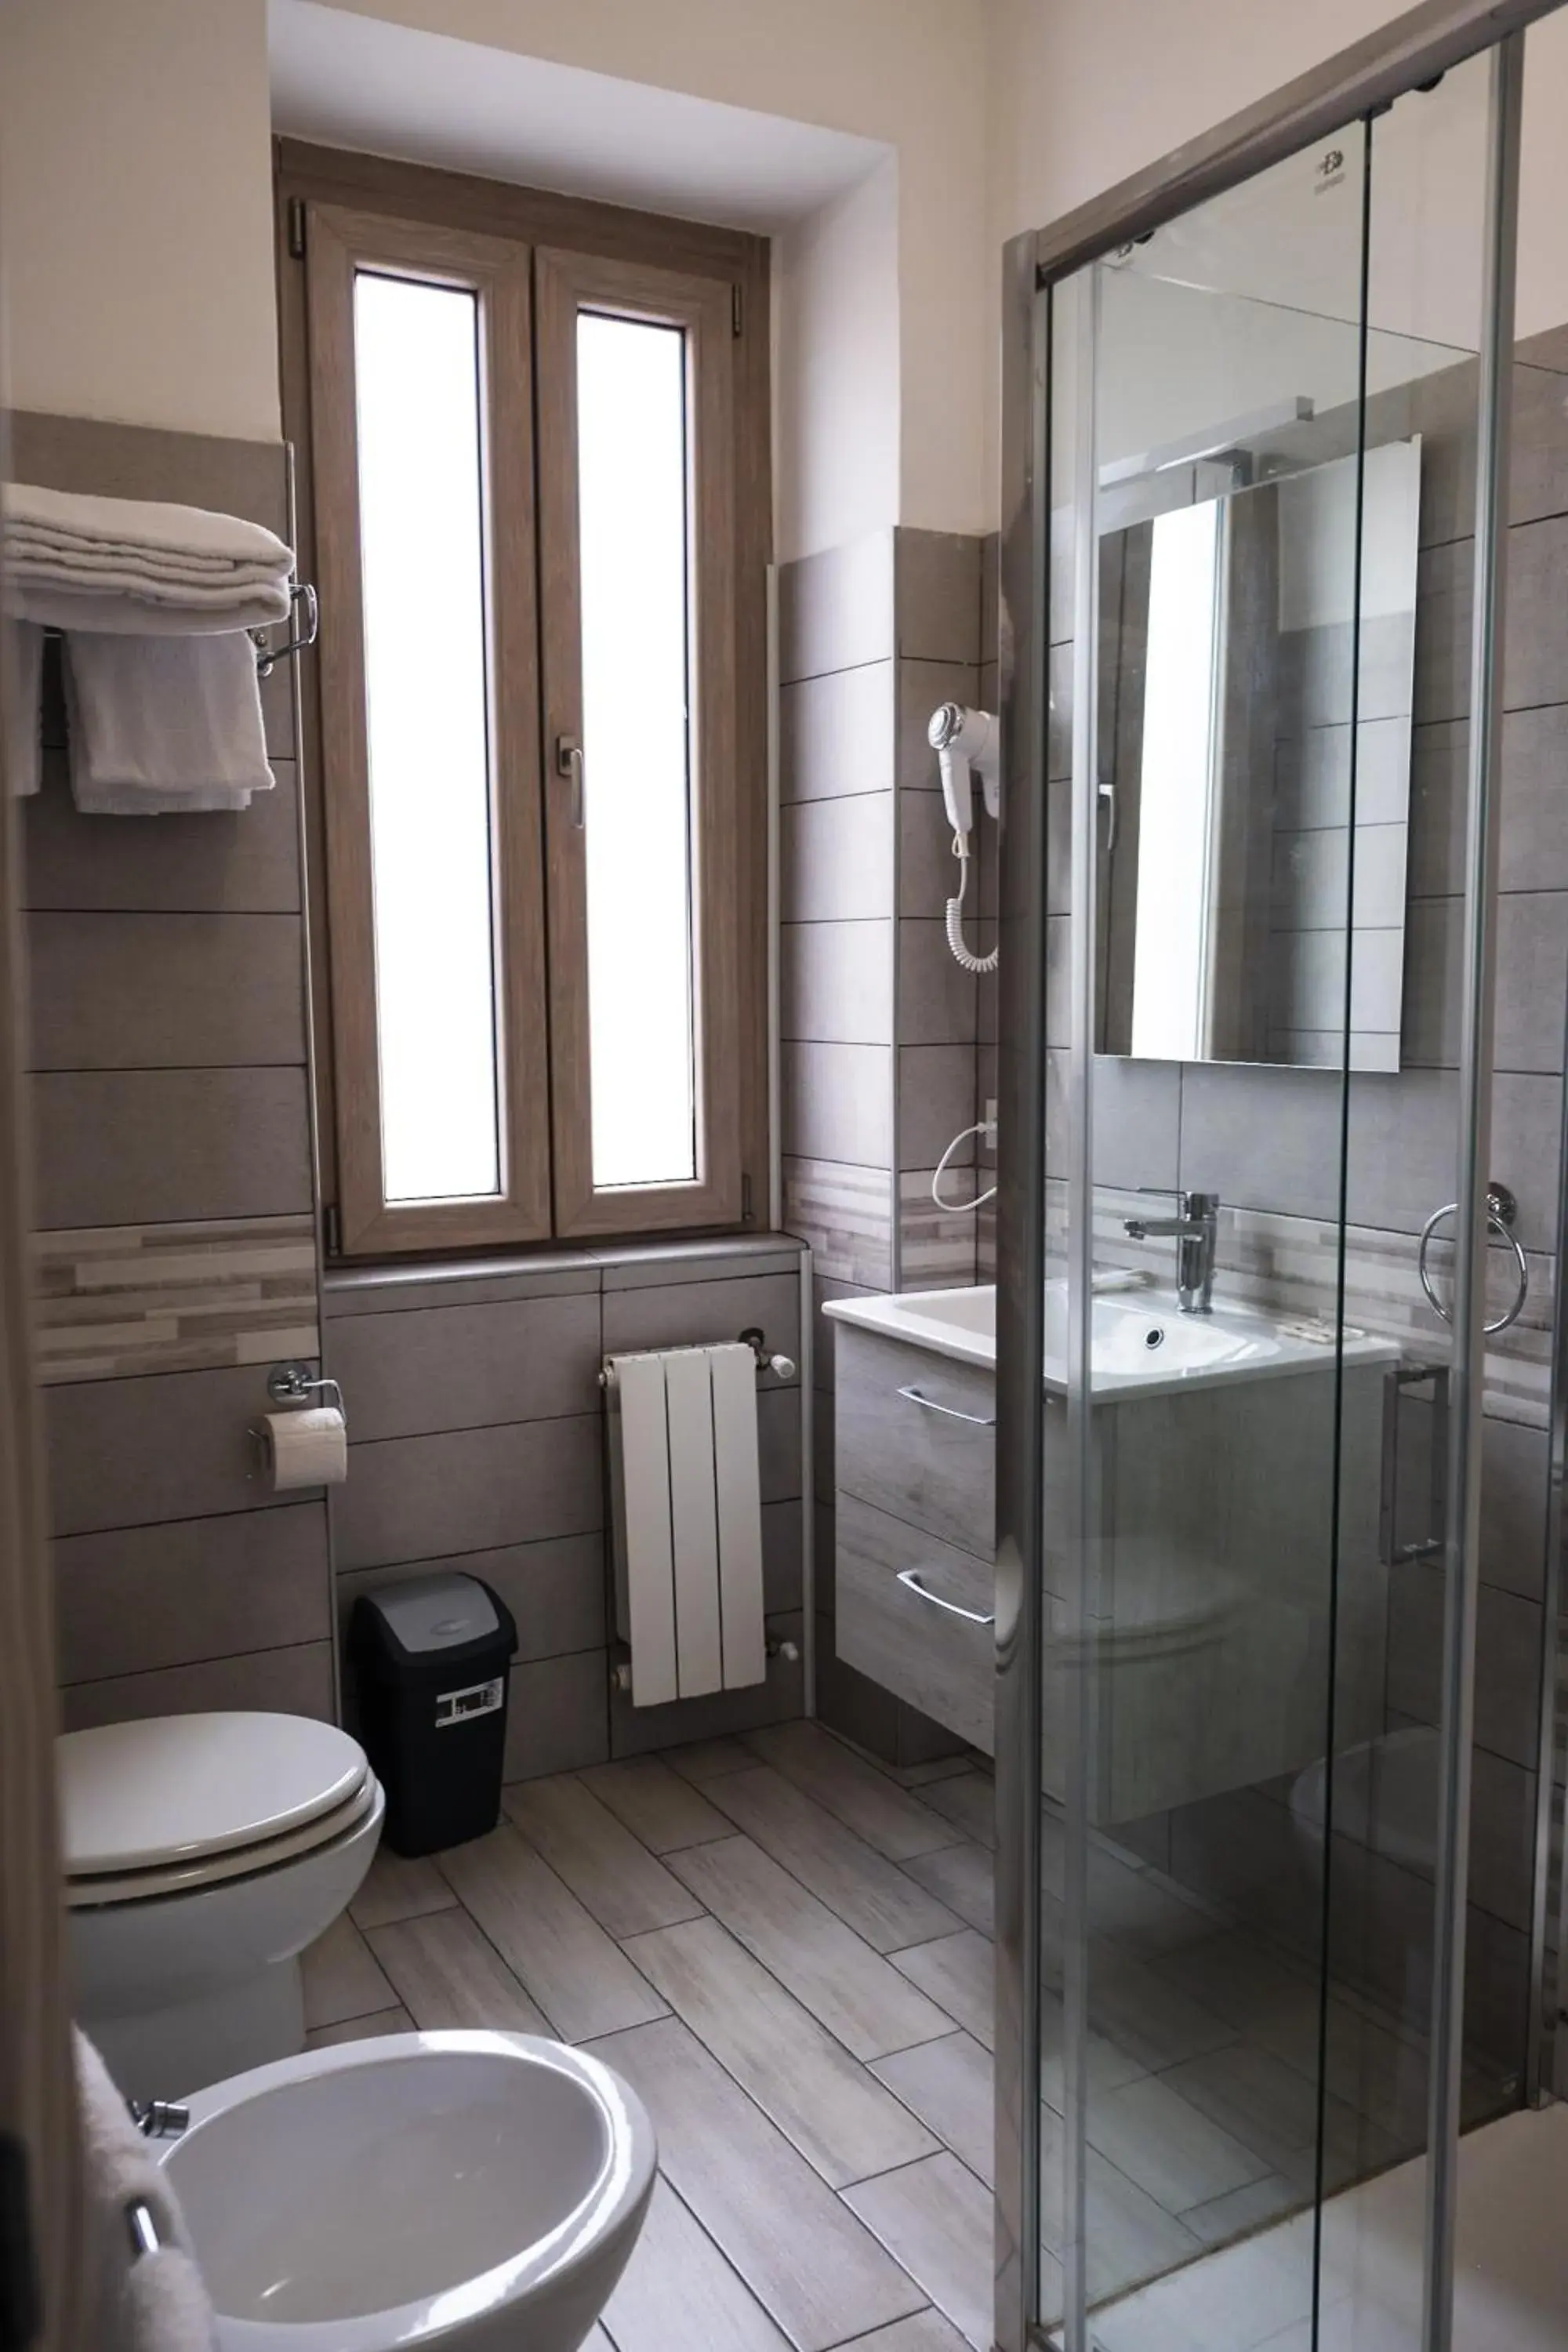 Bathroom in Hotel d'Este